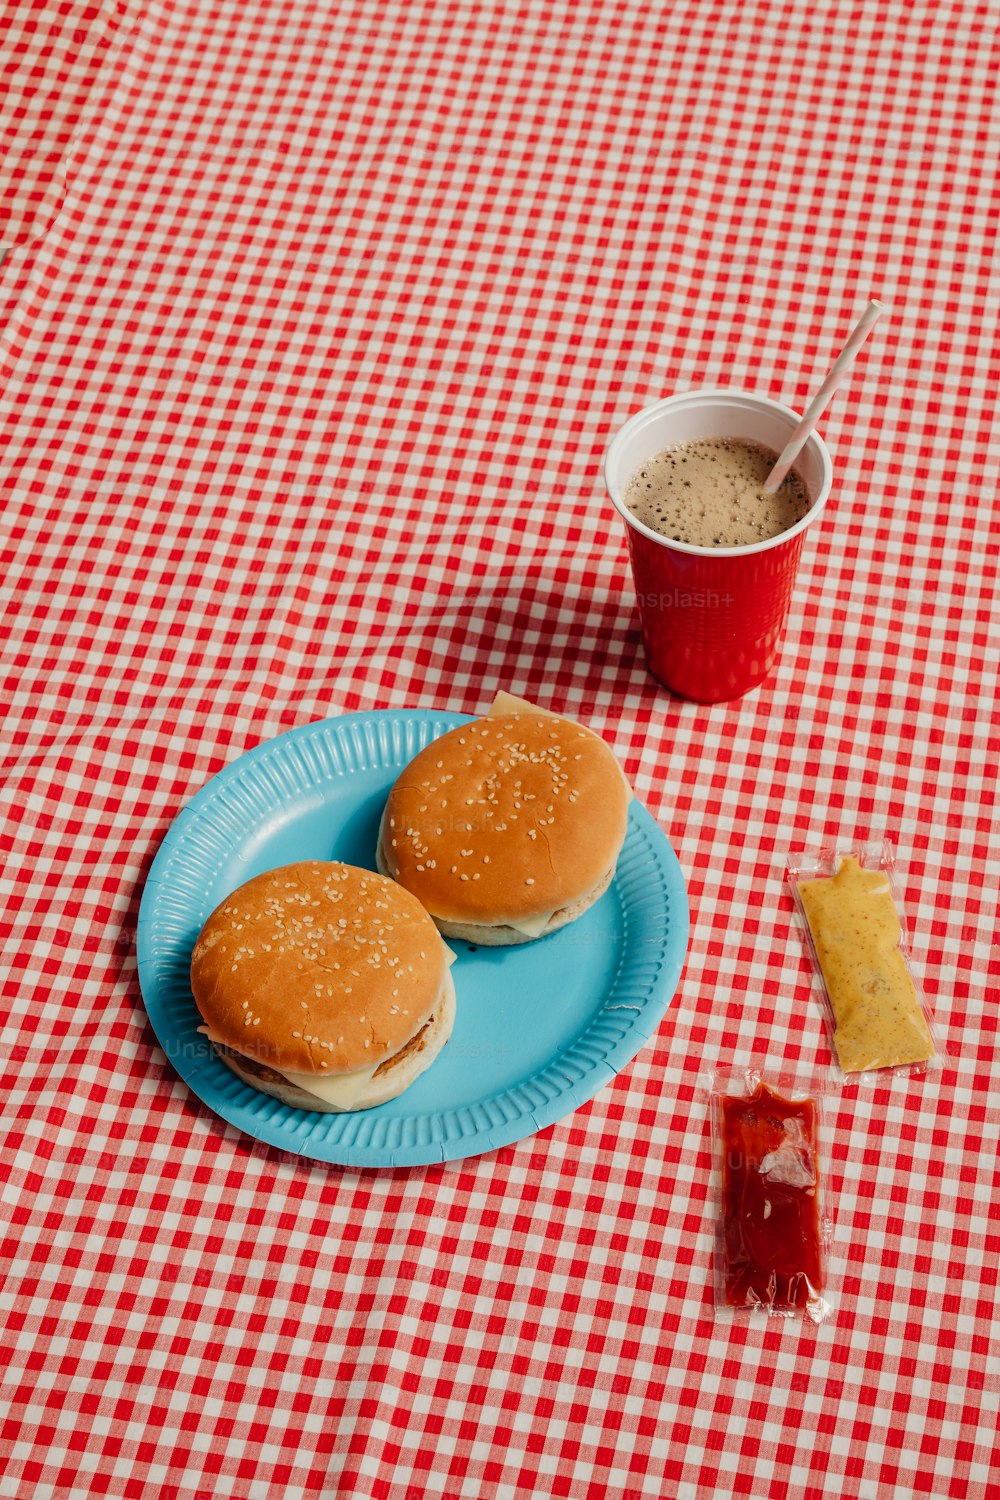 Zwei Hamburger auf einem blauen Teller neben einer Tasse Kaffee